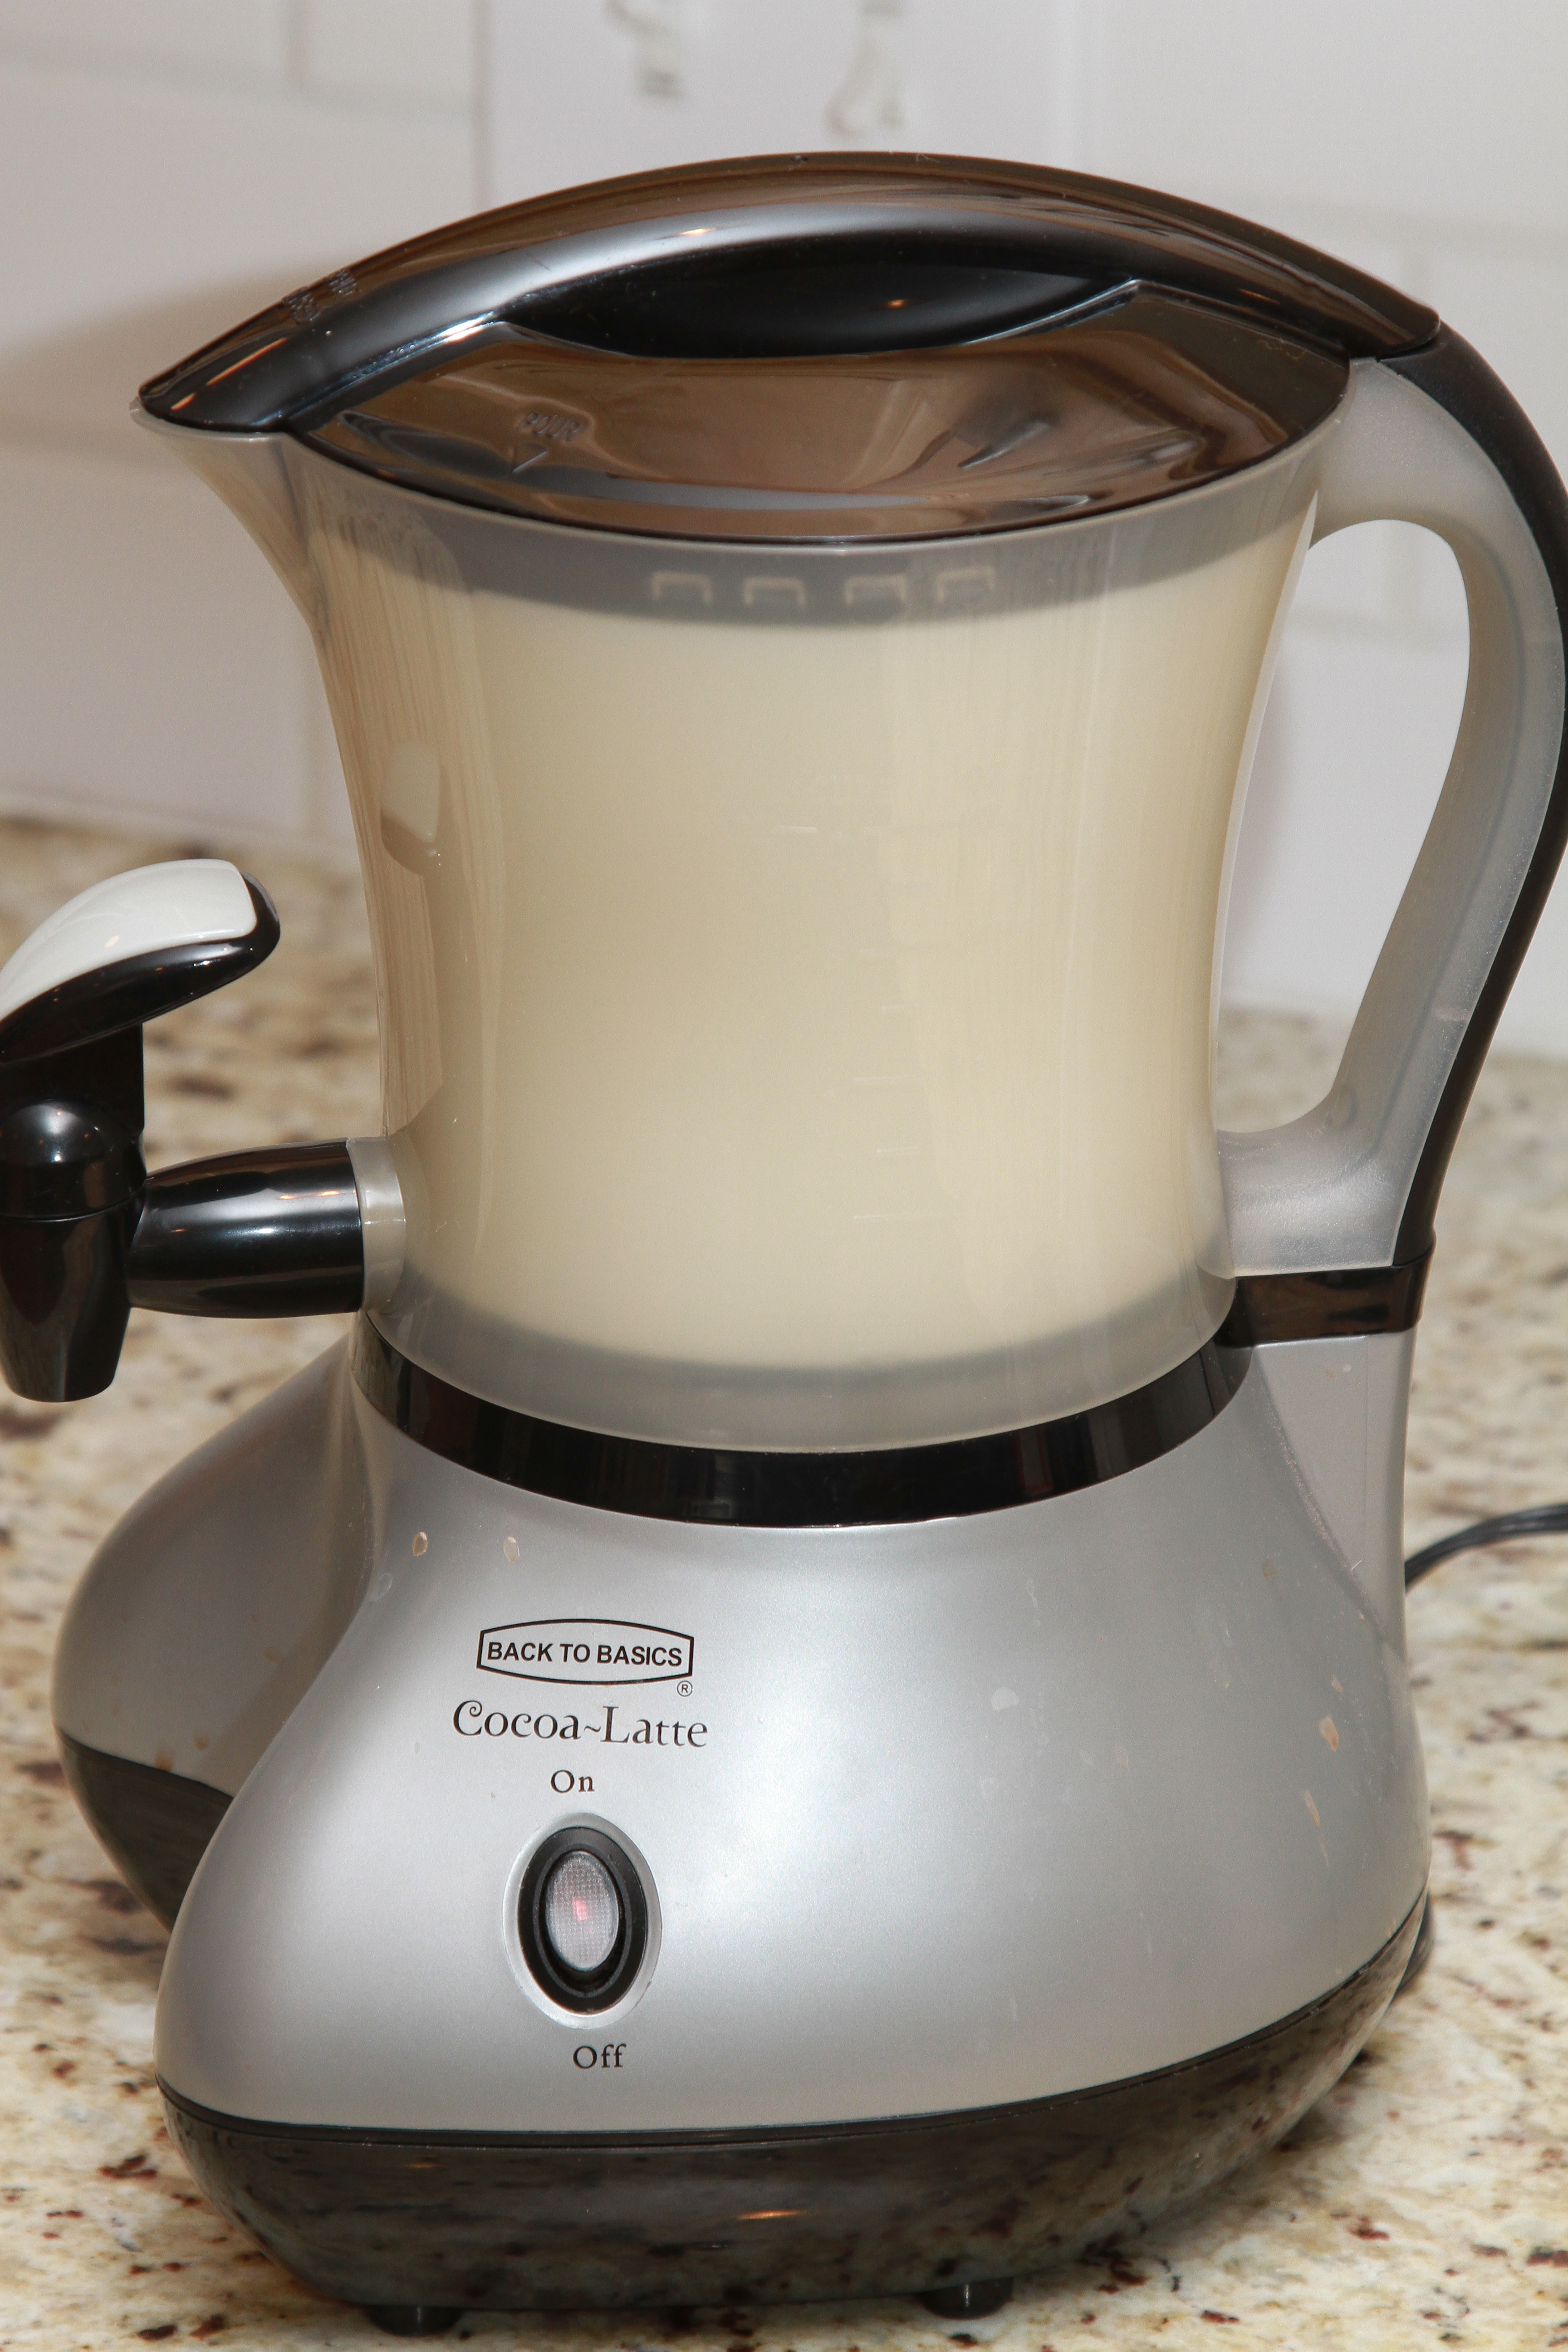 Back to Basics CM300BR Cocoa-Latte Hot-Drink Maker